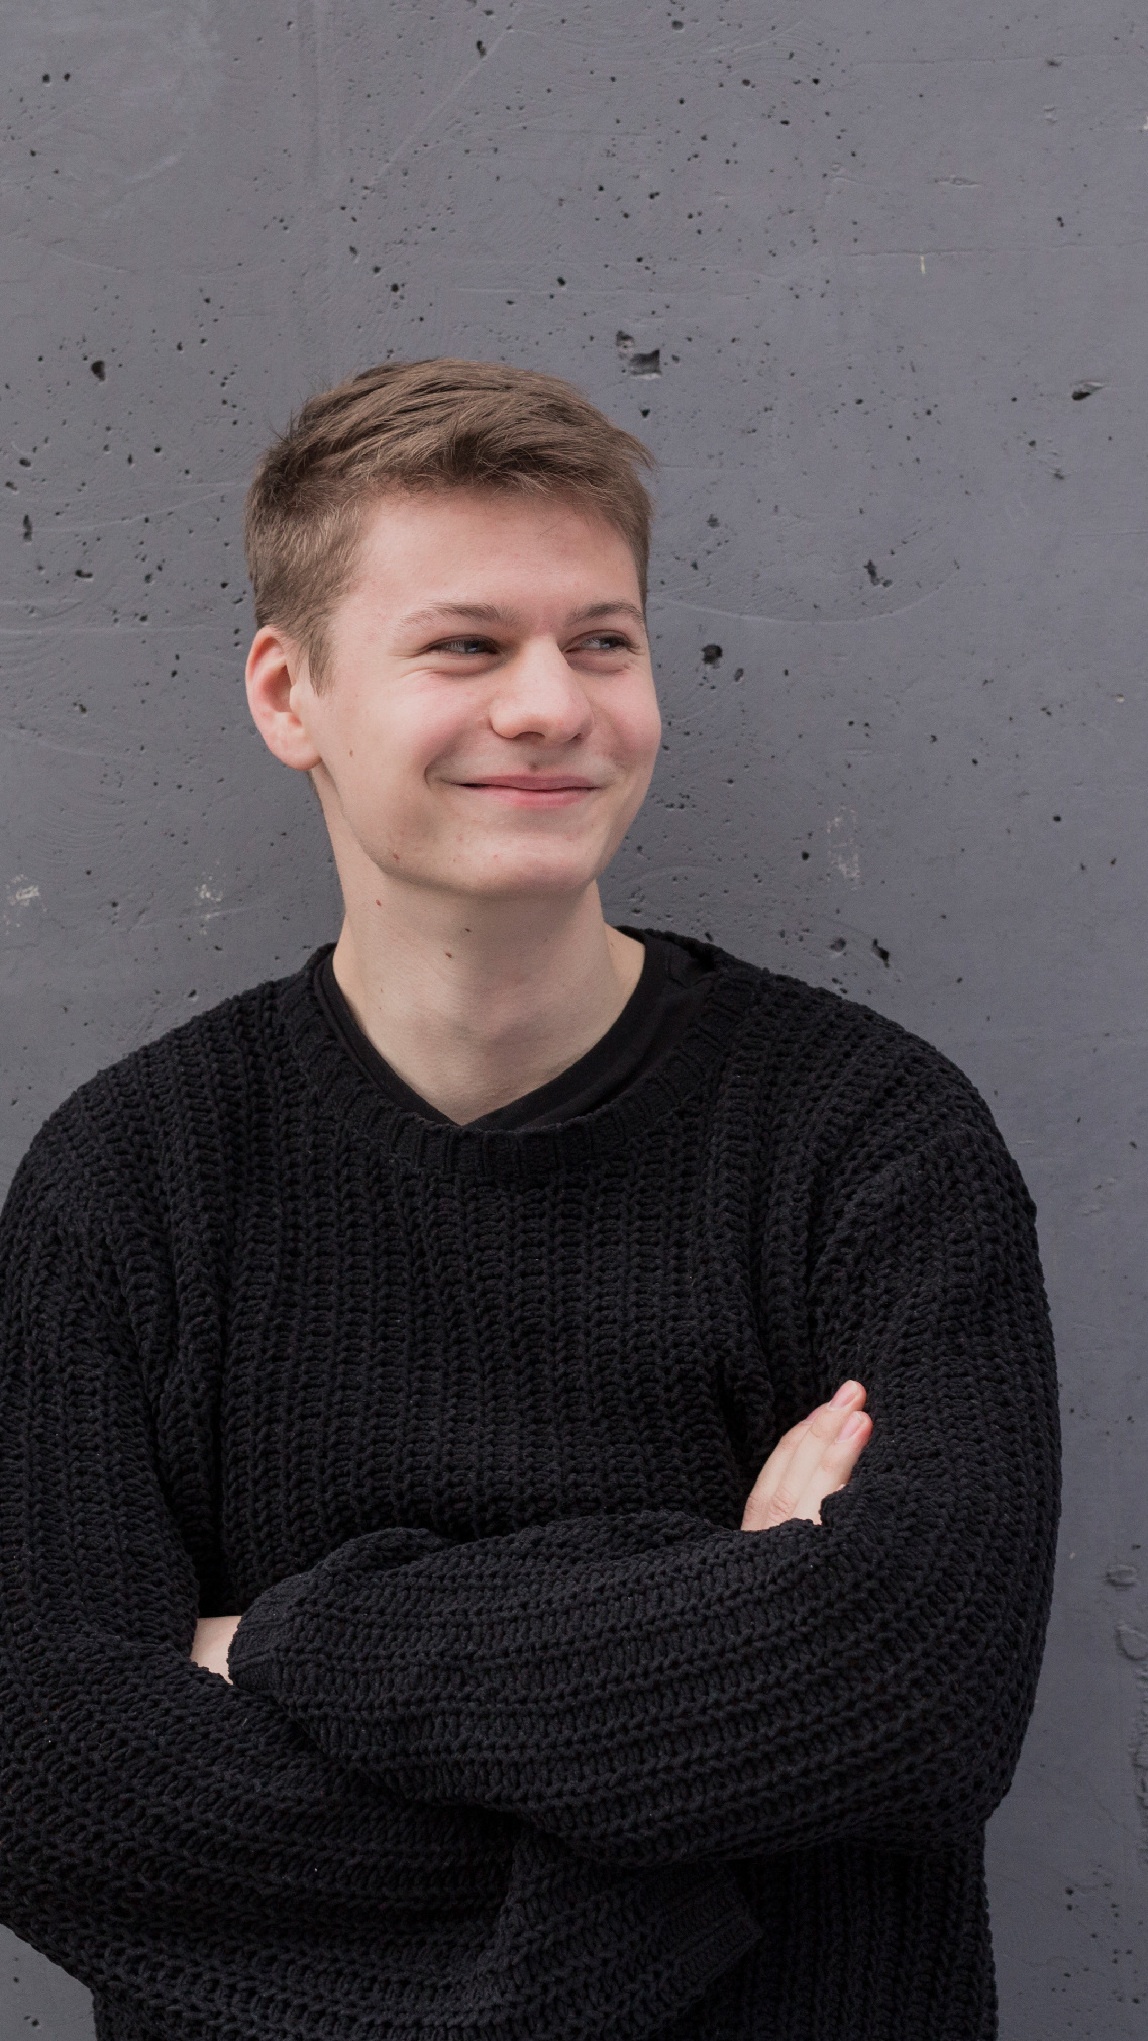 Philipp studiert Wirtschaftsingenieurwesen an der Technischen Universität Ilmenau, Johannes Heinke